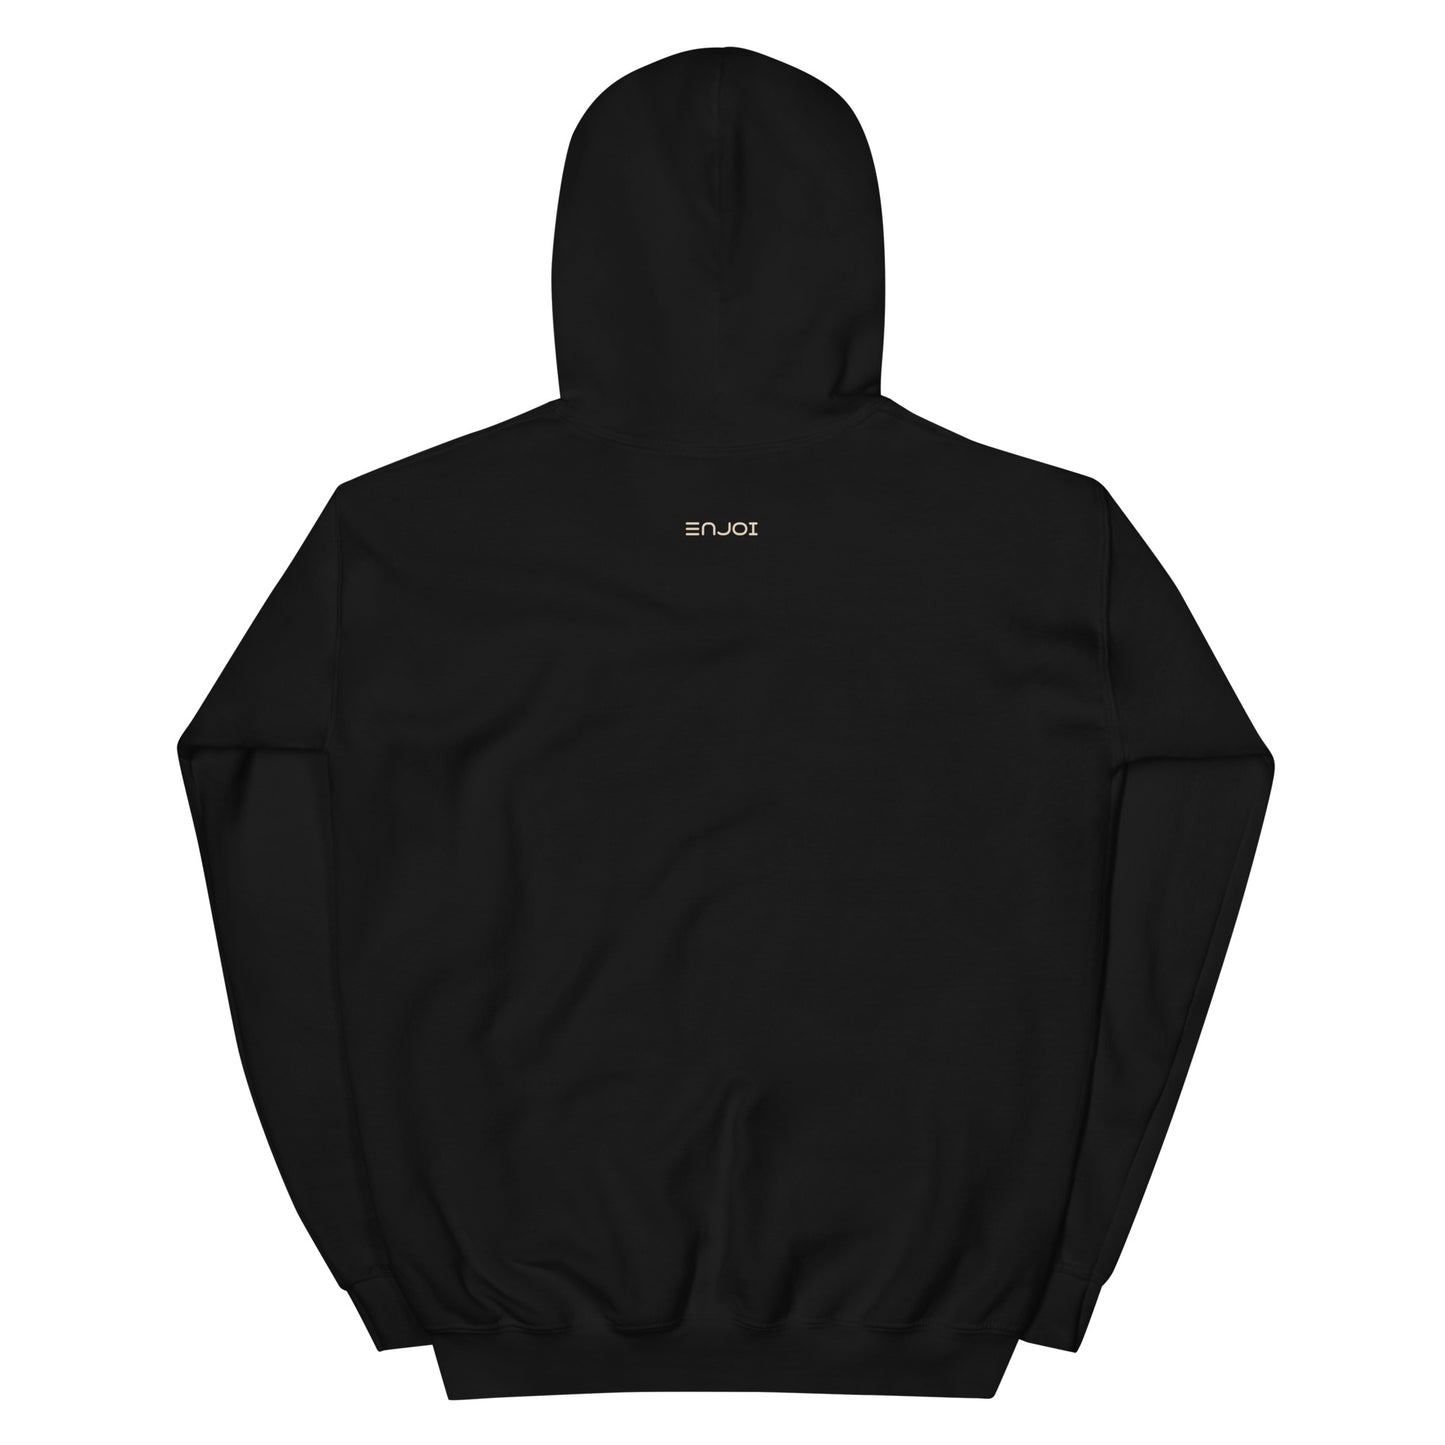 'sankofa' hoodie